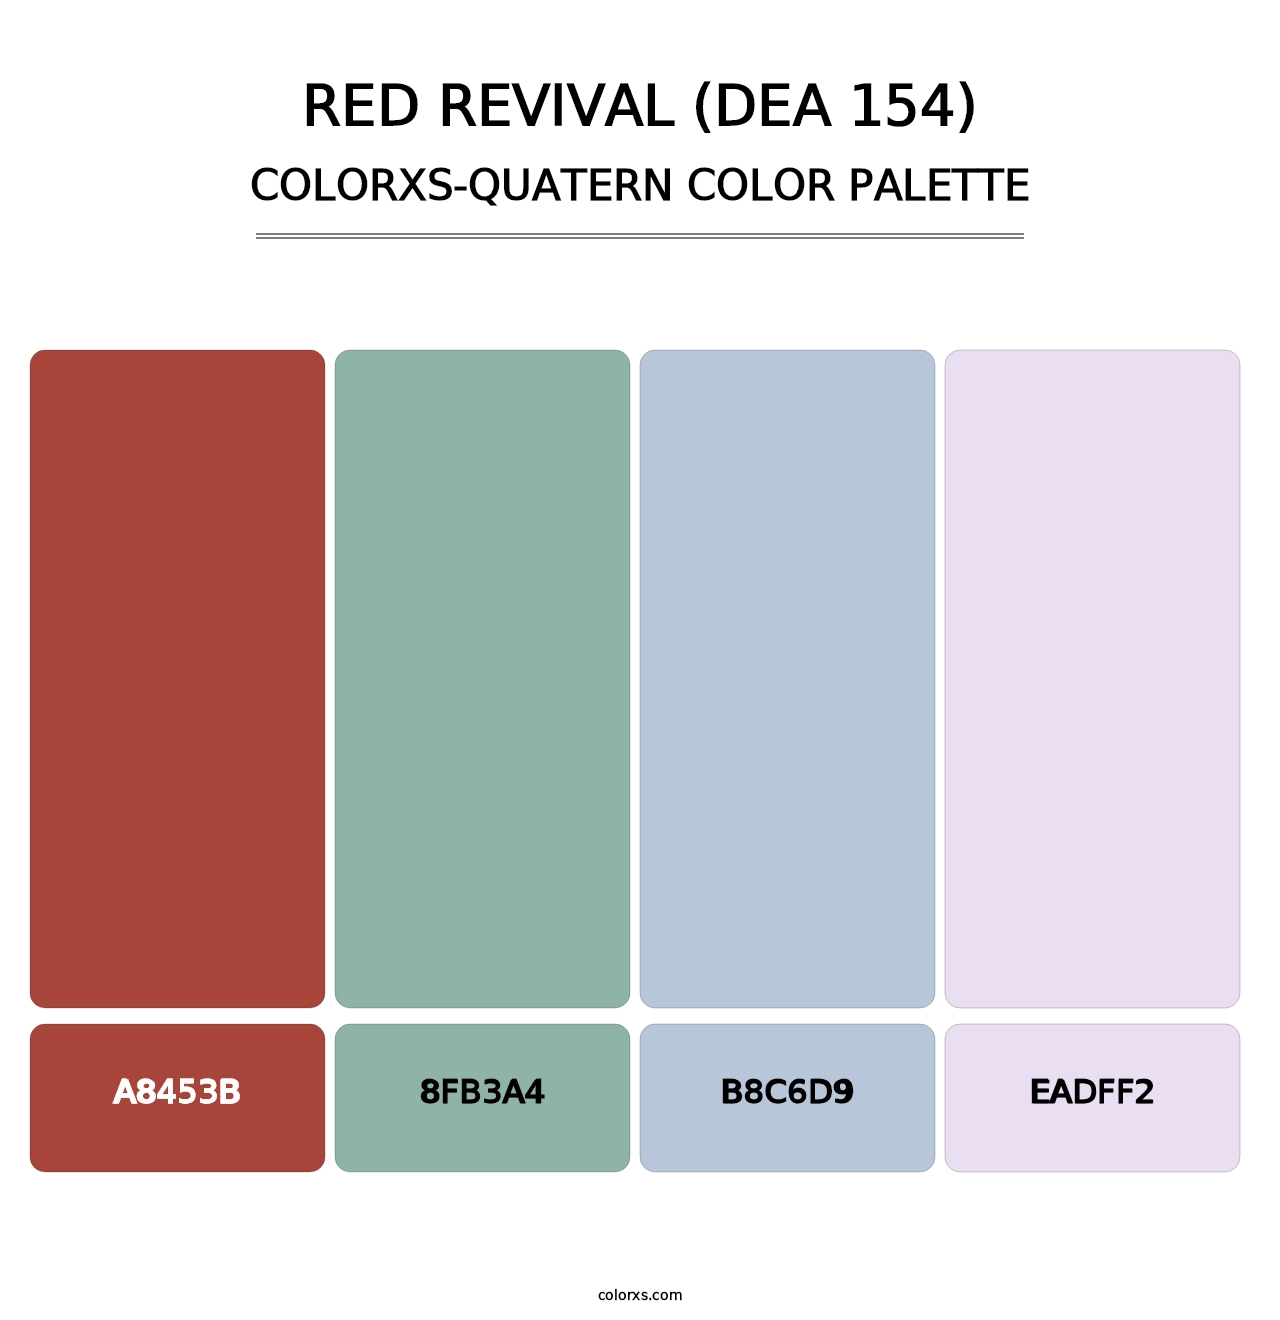 Red Revival (DEA 154) - Colorxs Quatern Palette